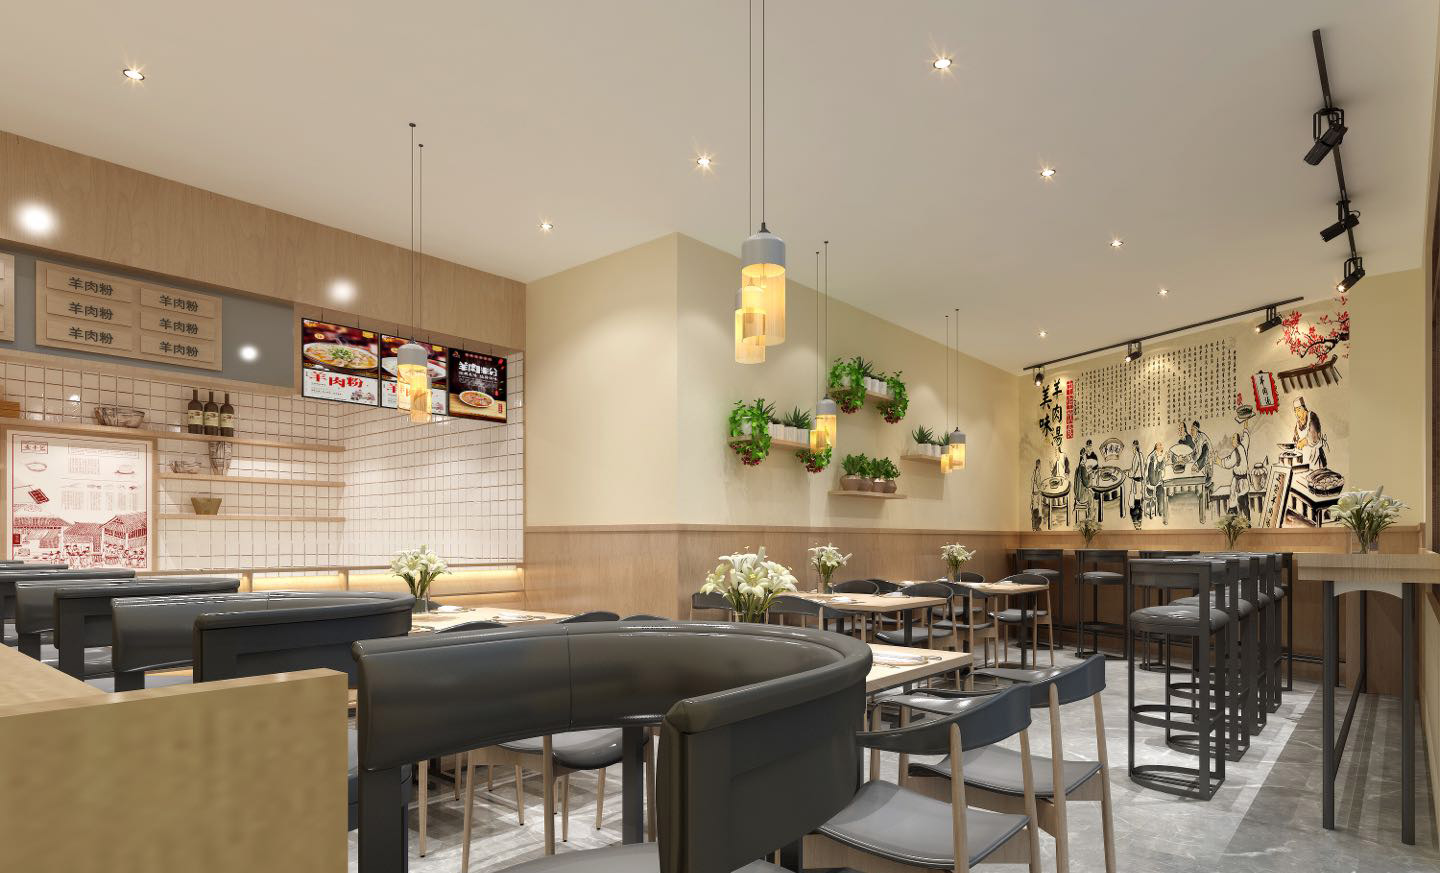 黄焖鸡米饭店是一家备受欢迎的特色快餐店,其装修设计也是广受好评